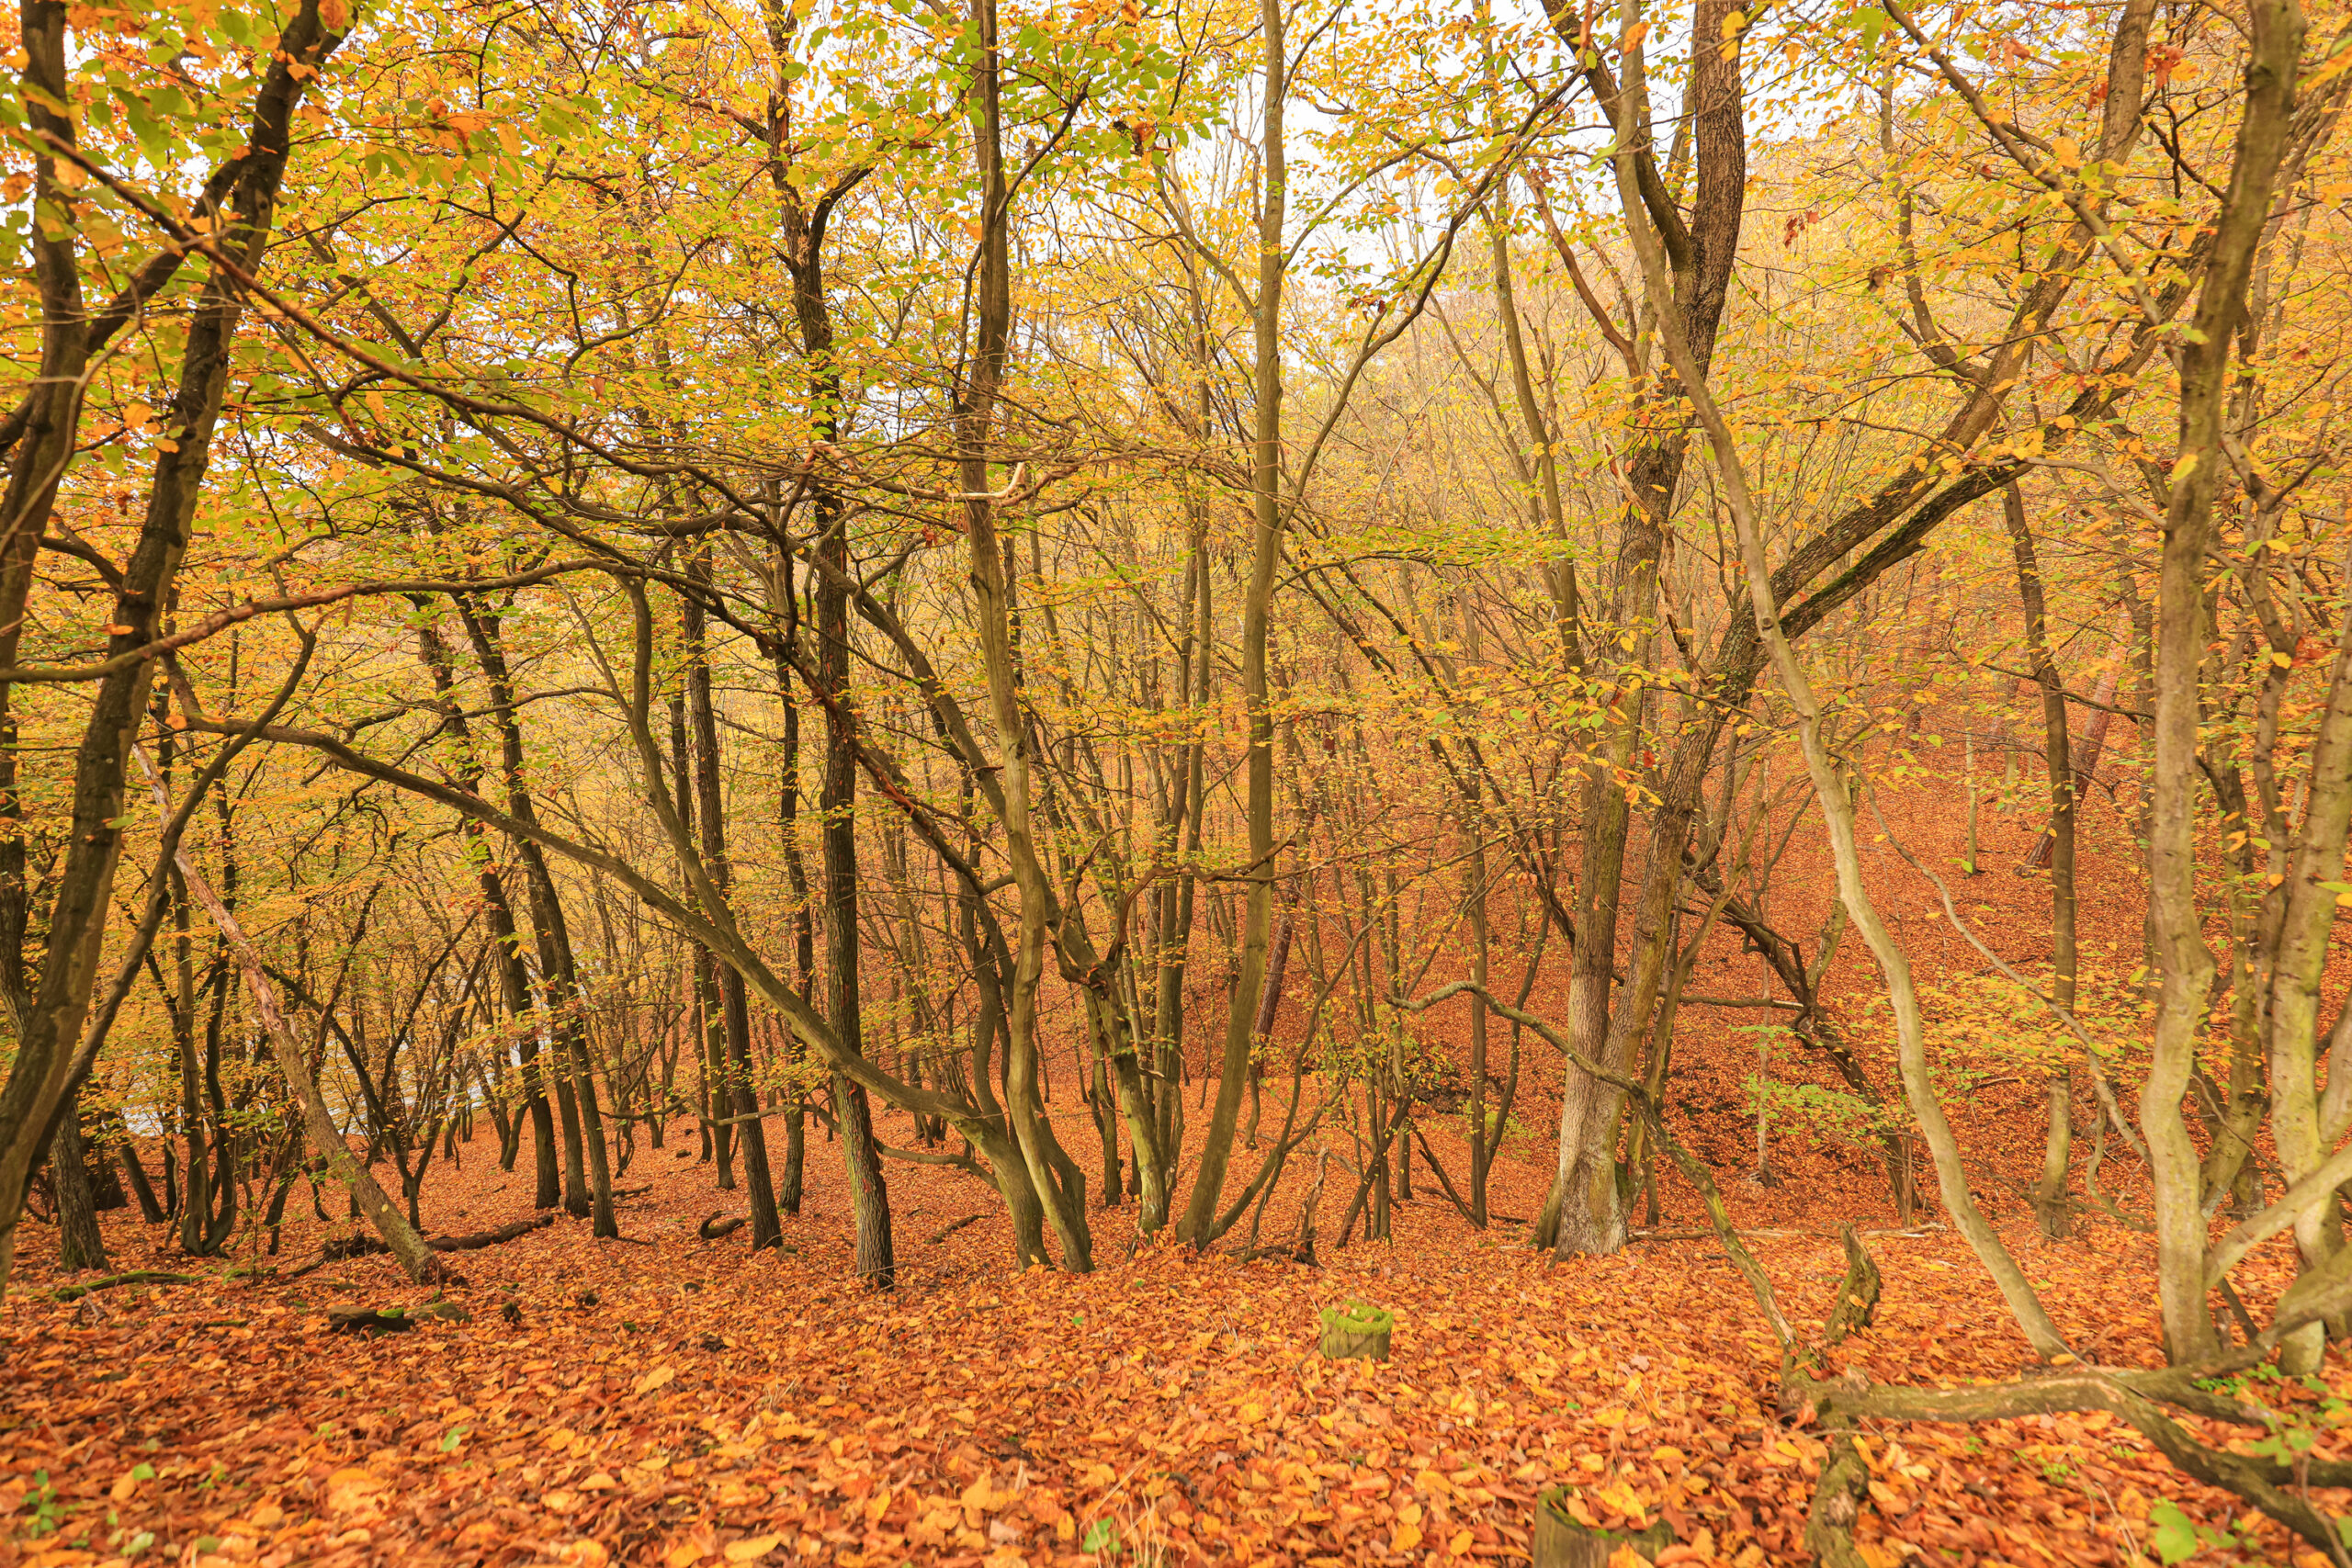 <h1>Zábělá – porost dubu a habru</h1><br />
Podzimní pohled do listnatého lesa, který porůstá prudký svah nad řekou klesající směrem k zadní části snímku. Povrch půdy pokrývá souvislá vrstva listí v odstínech od žluté přes rezavou až k hnědé.